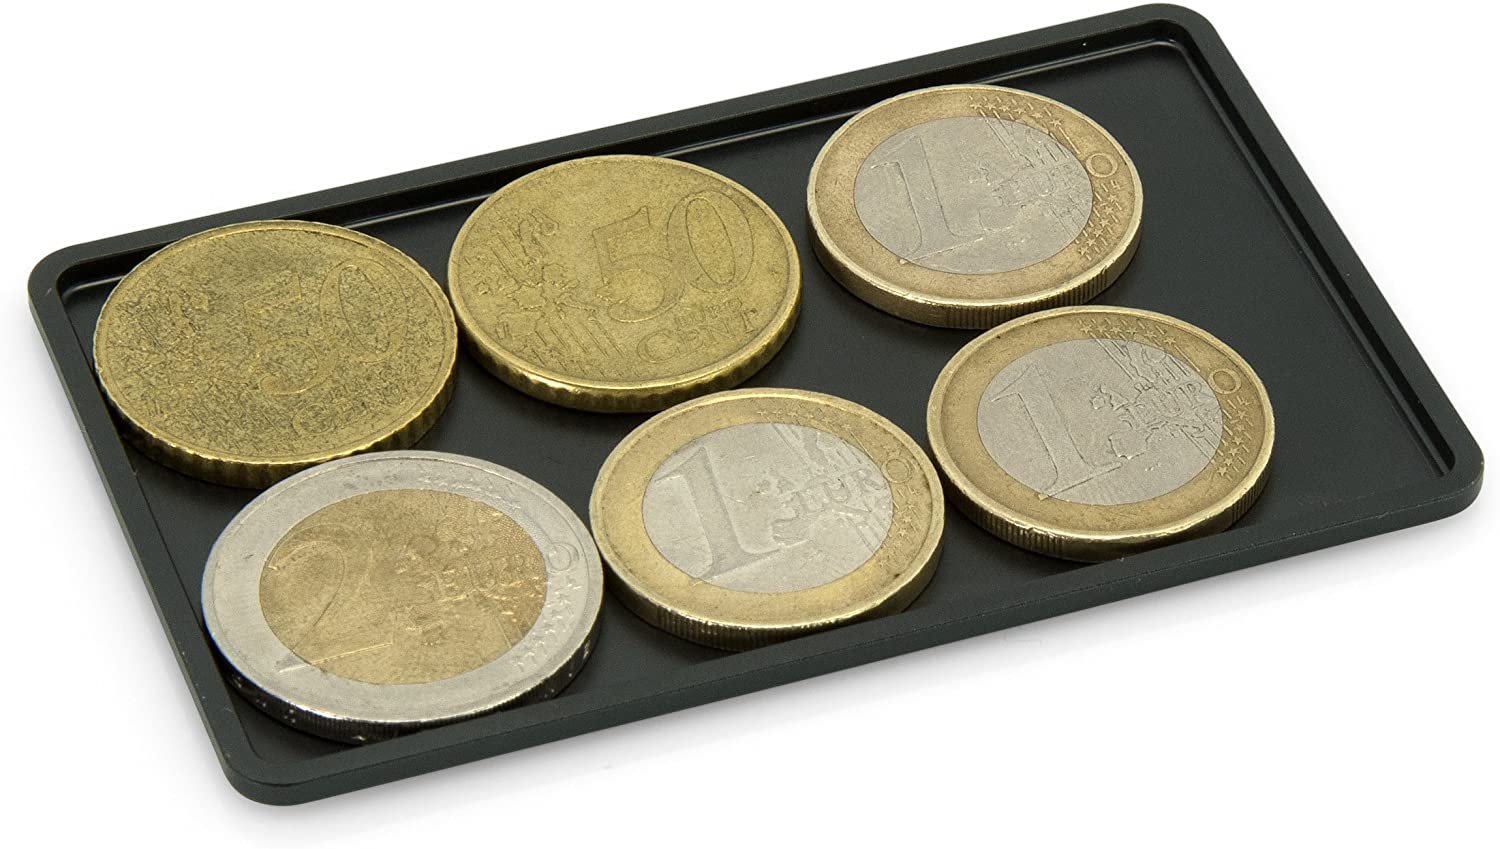 Universales Münzfach - Kleingeldfach aus Aluminium - Für Slim Wallets, Kreditkartenetuis, Kartenetuis, Geldbeutel - Blockt RFID Signale